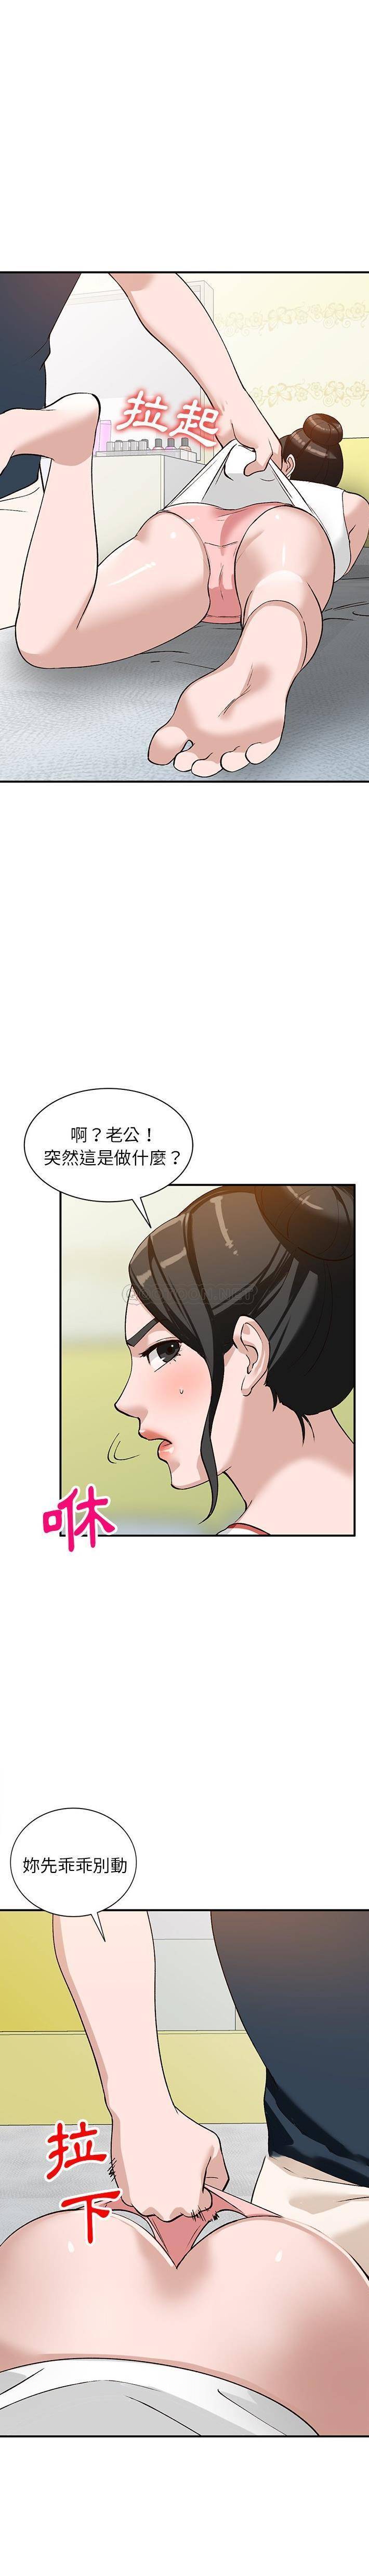 韩国污漫画 她們的小秘密(小鎮上的女人們) 第19话 14